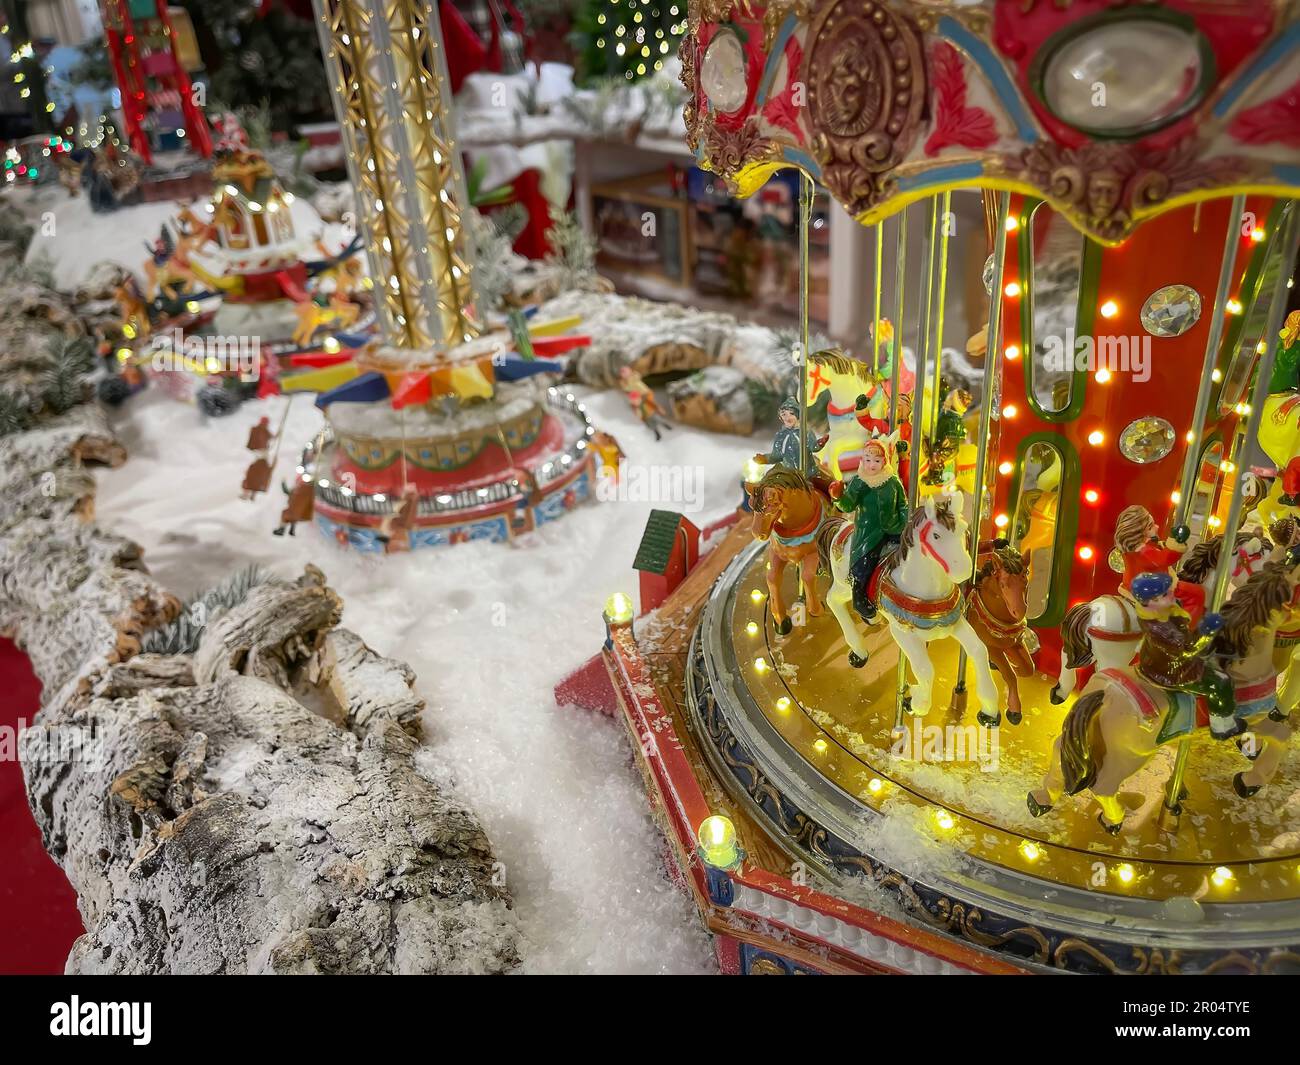 Scena natalizia di una fiera di Natale giocattolo, con una giostra con figurine in primo piano, ricreazione di una fiera di Natale con modelli in scala ceramica Foto Stock